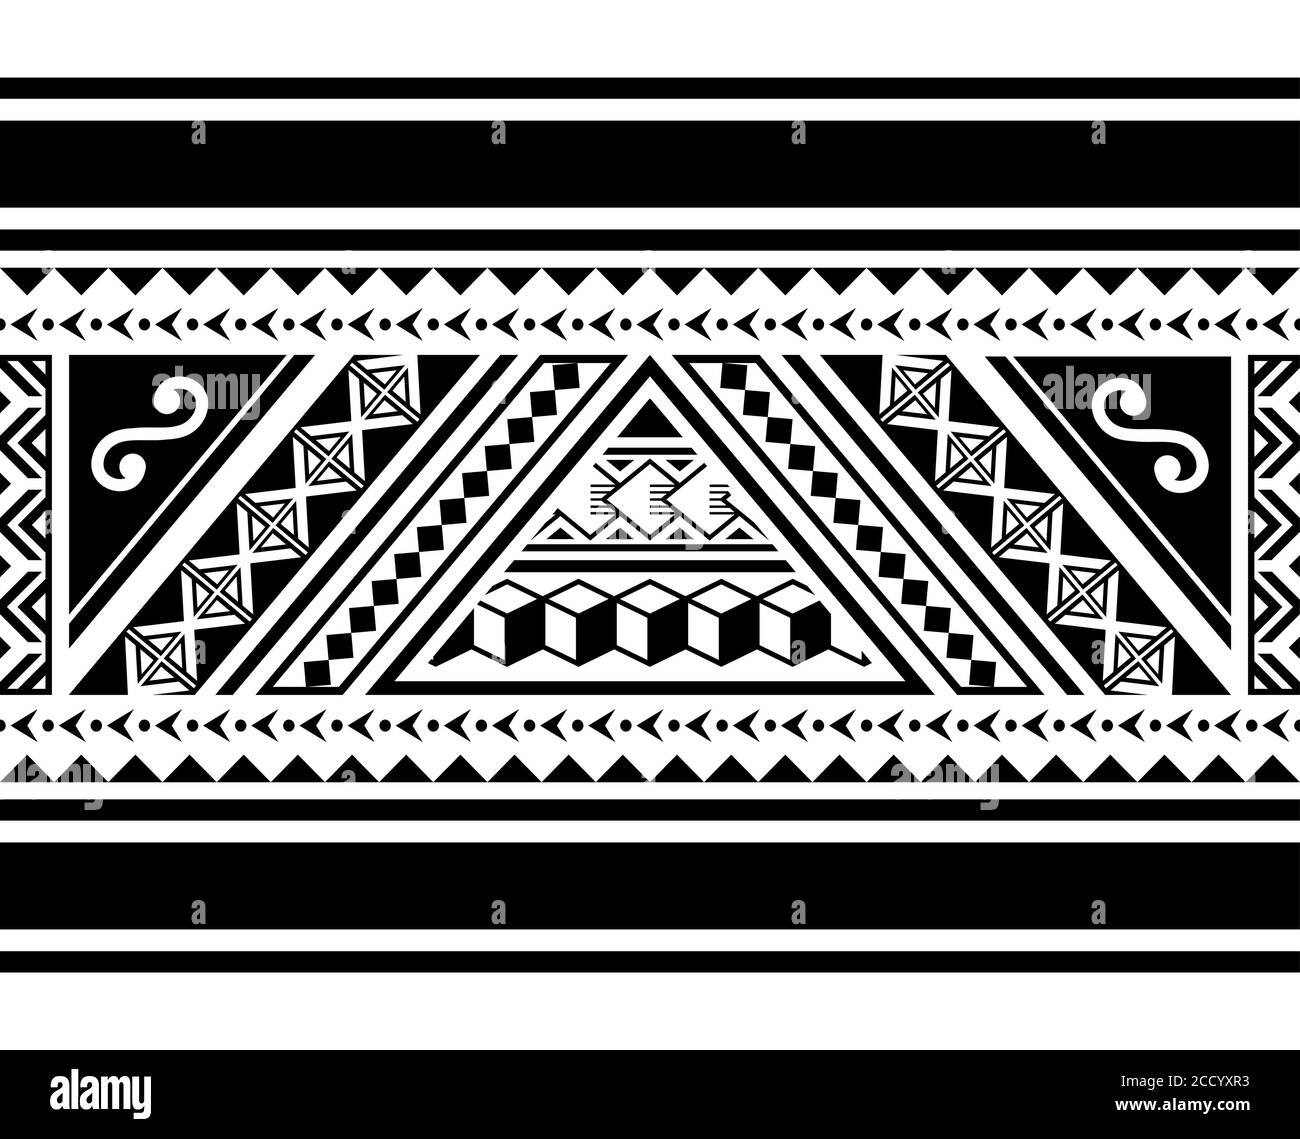 Modello orizzontale vettoriale ininterrotto tribale polinesiano, design hawaiano retro ispirato all'arte del tatuaggio Maori Illustrazione Vettoriale